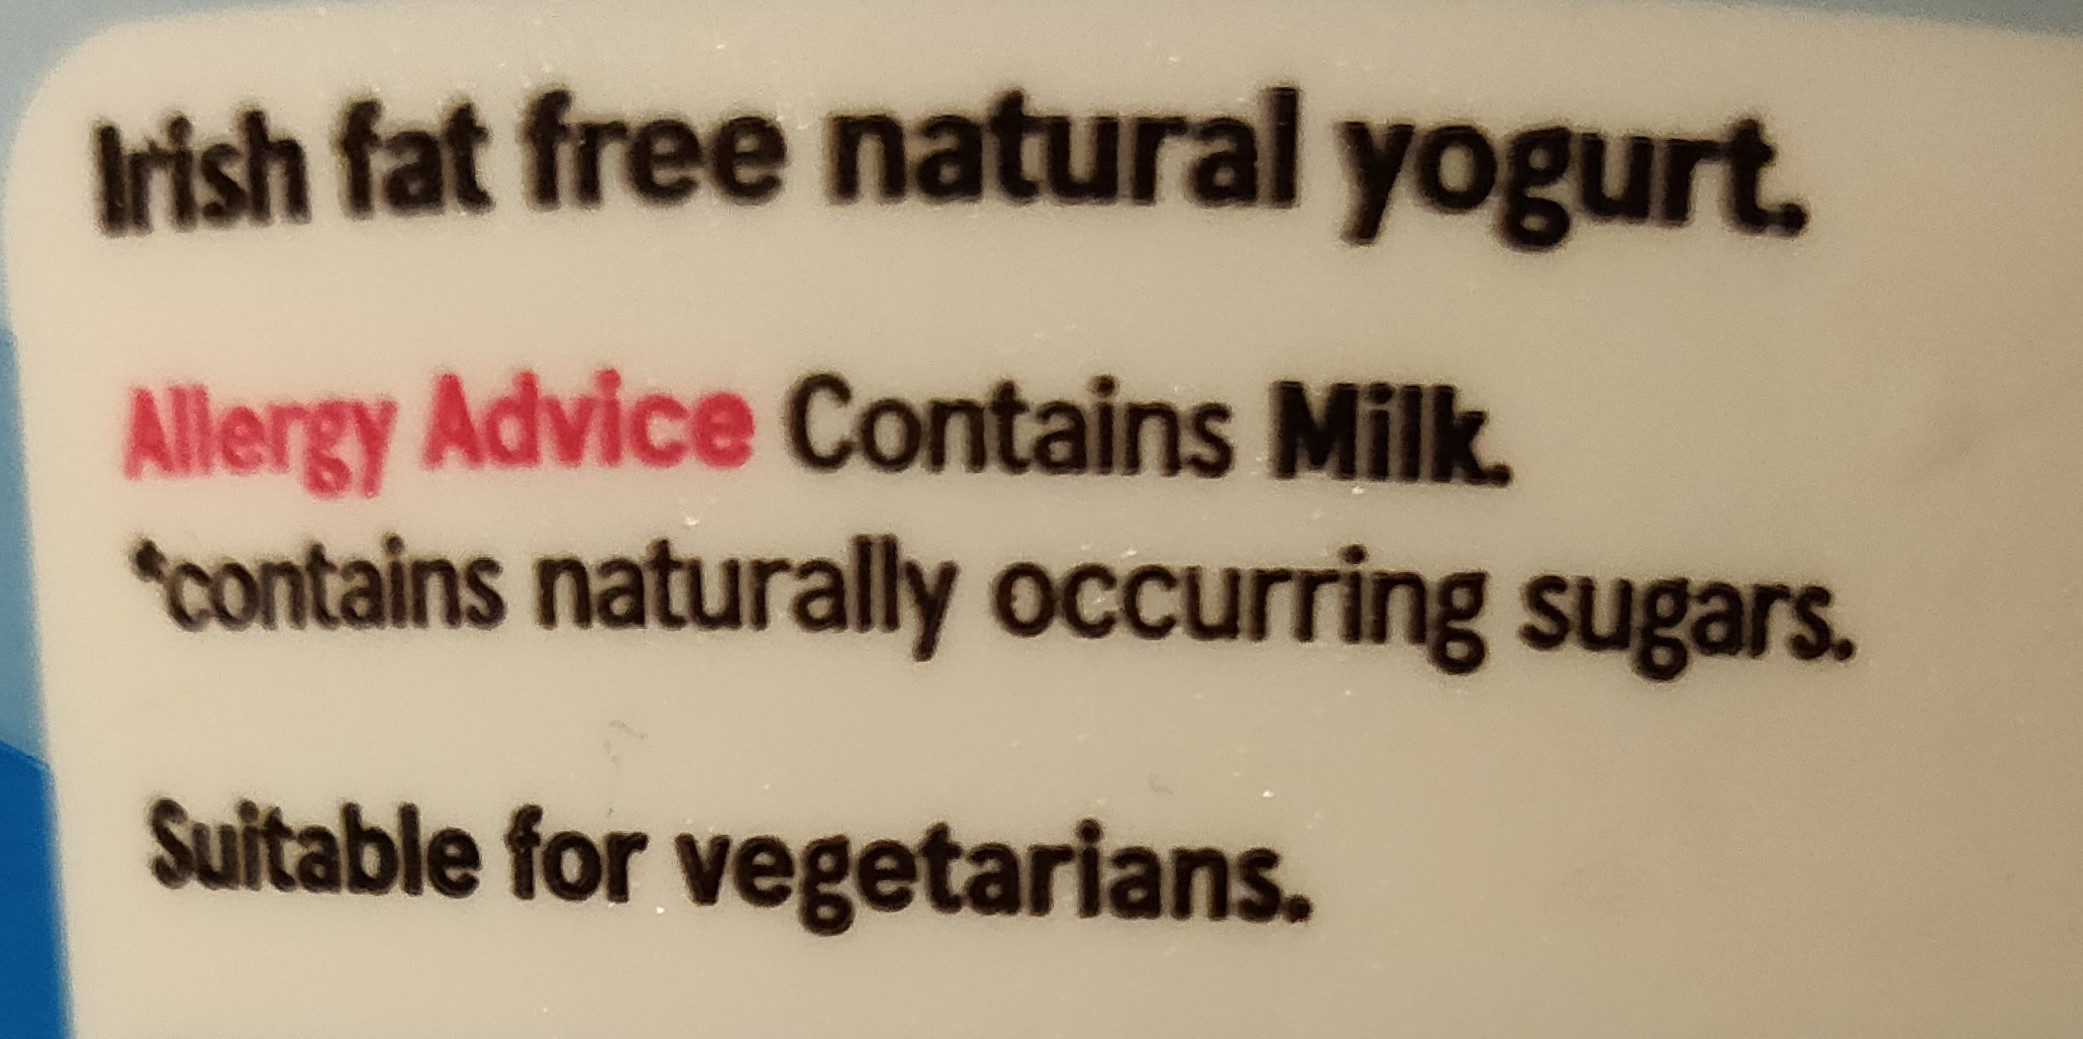 Irish fat free natural yogurt - Ingredients